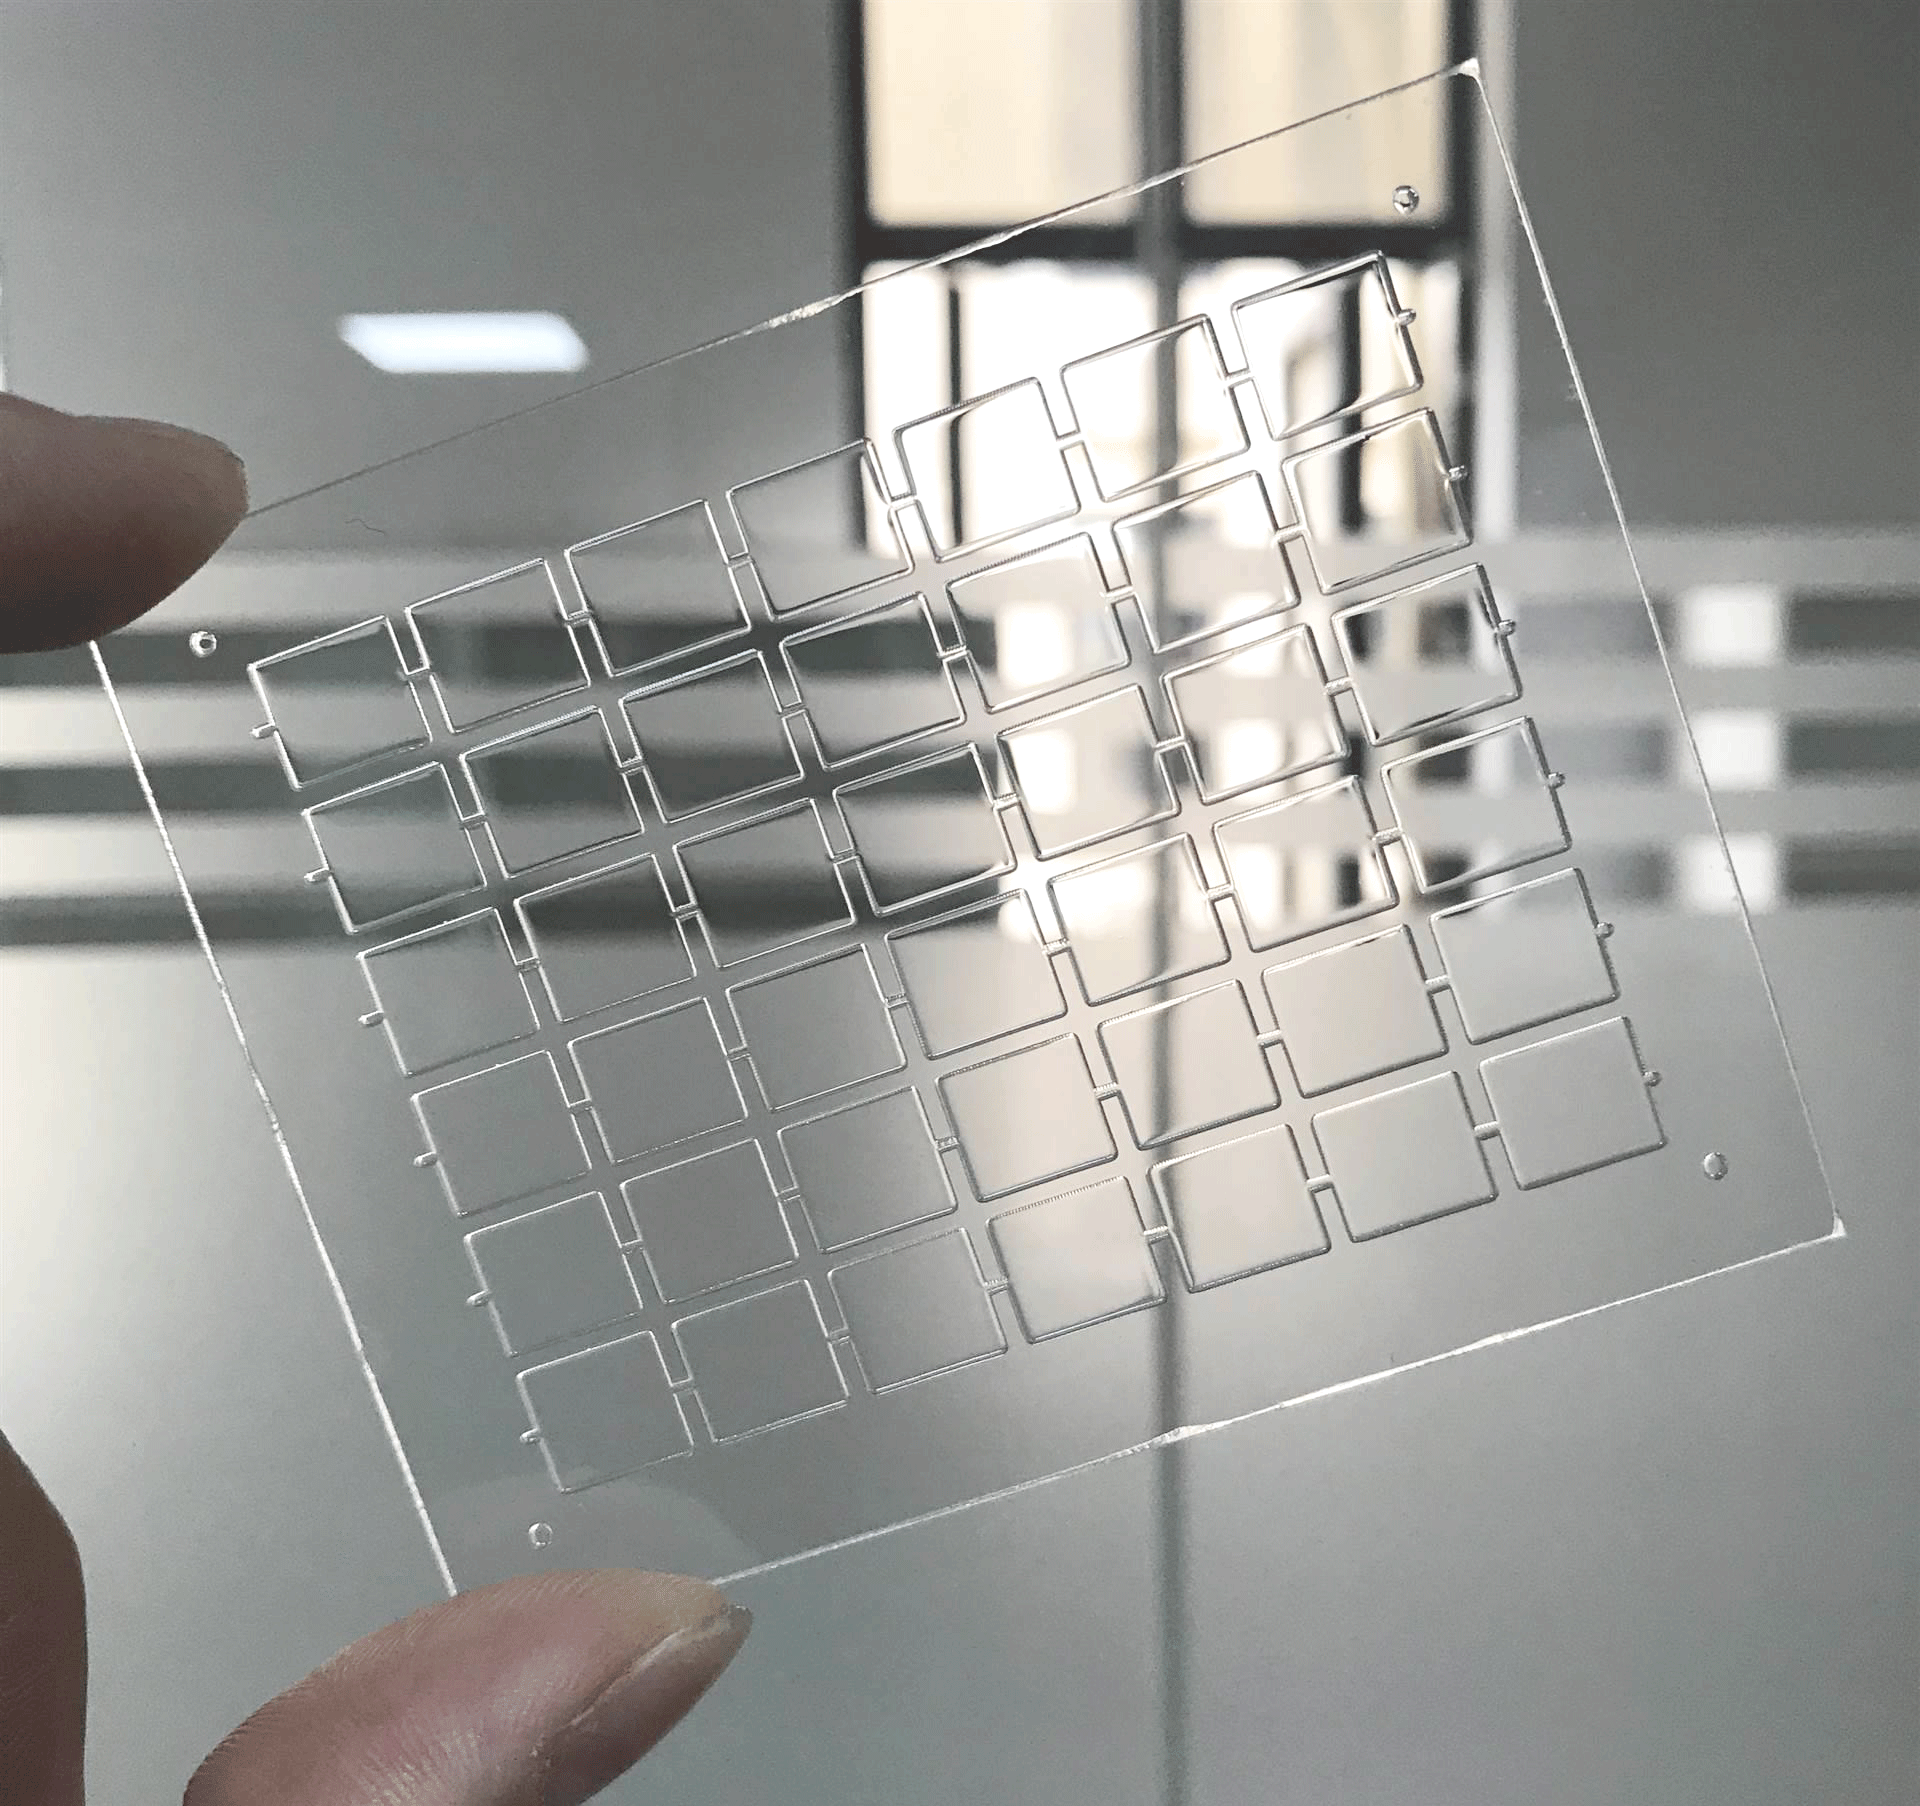 功率放大器在激光玻璃切割技术中的用途